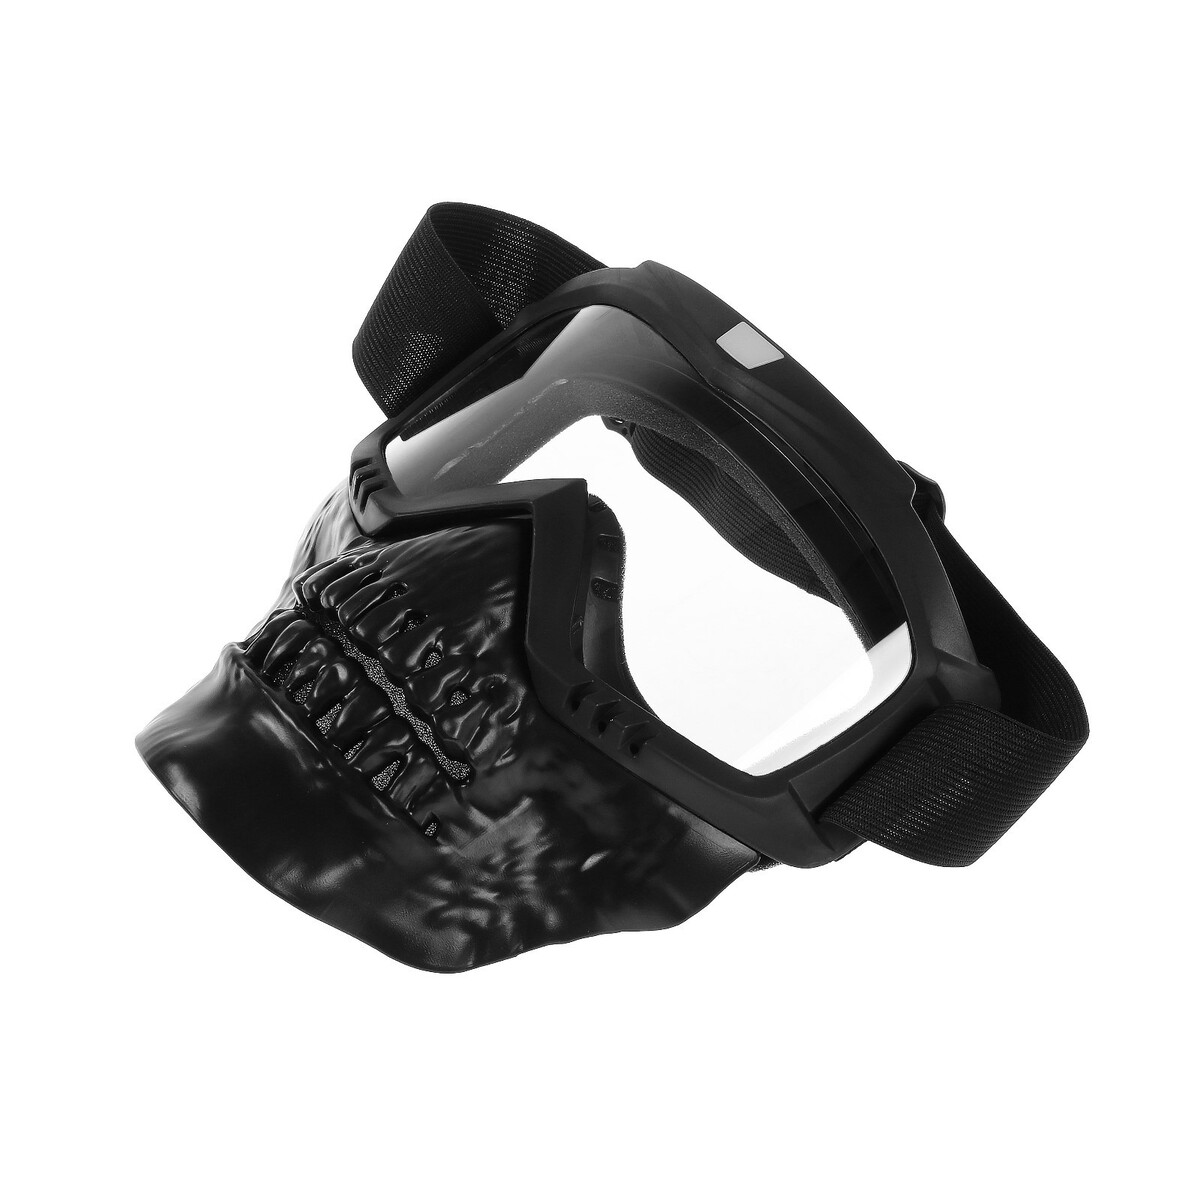 Очки-маска для езды на мототехнике, разборные, визор прозрачный, цвет черный щиток защитный welder визор лайт эластичное оголовье